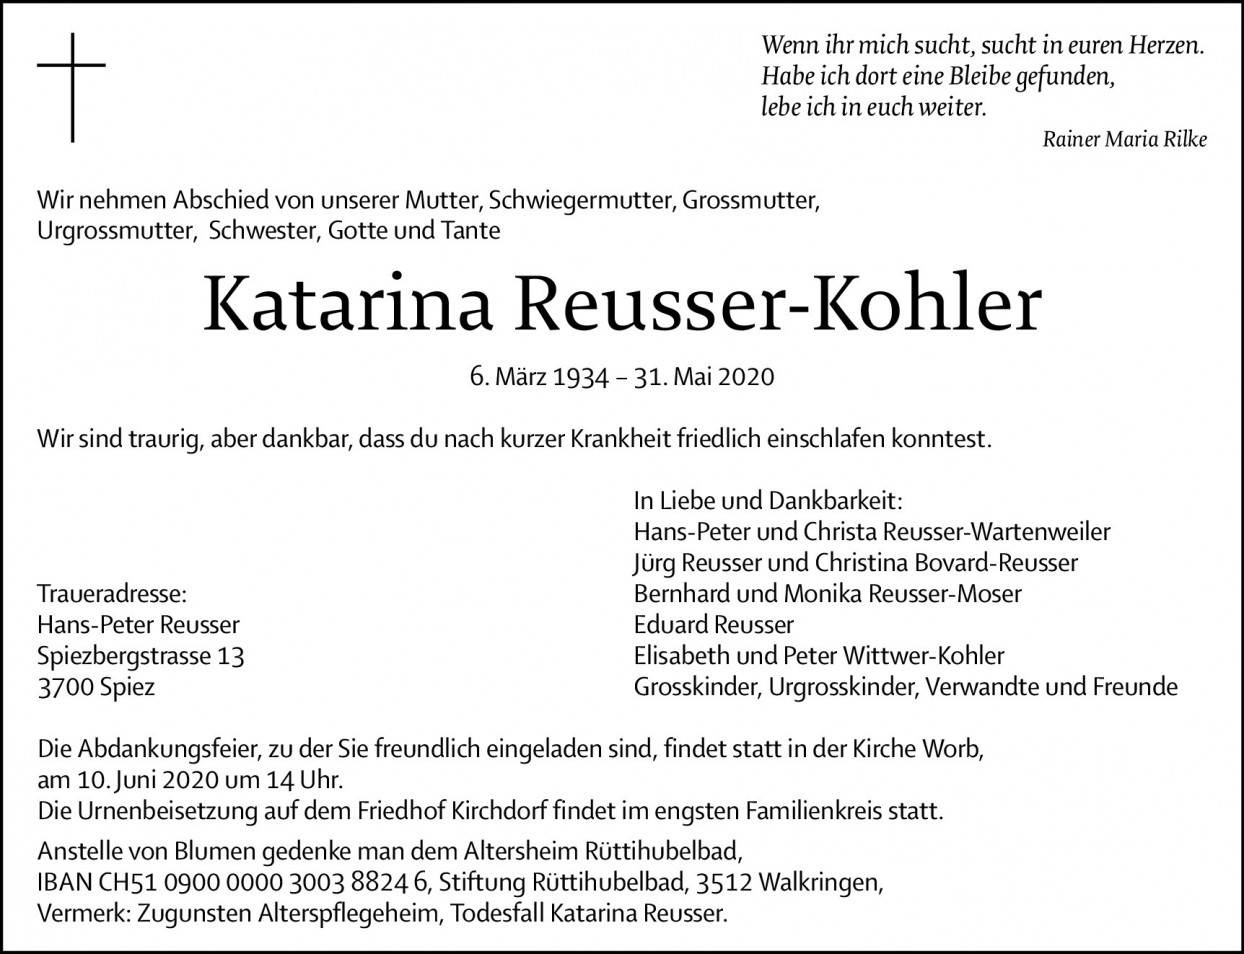 Katarina Reusser-Kohler